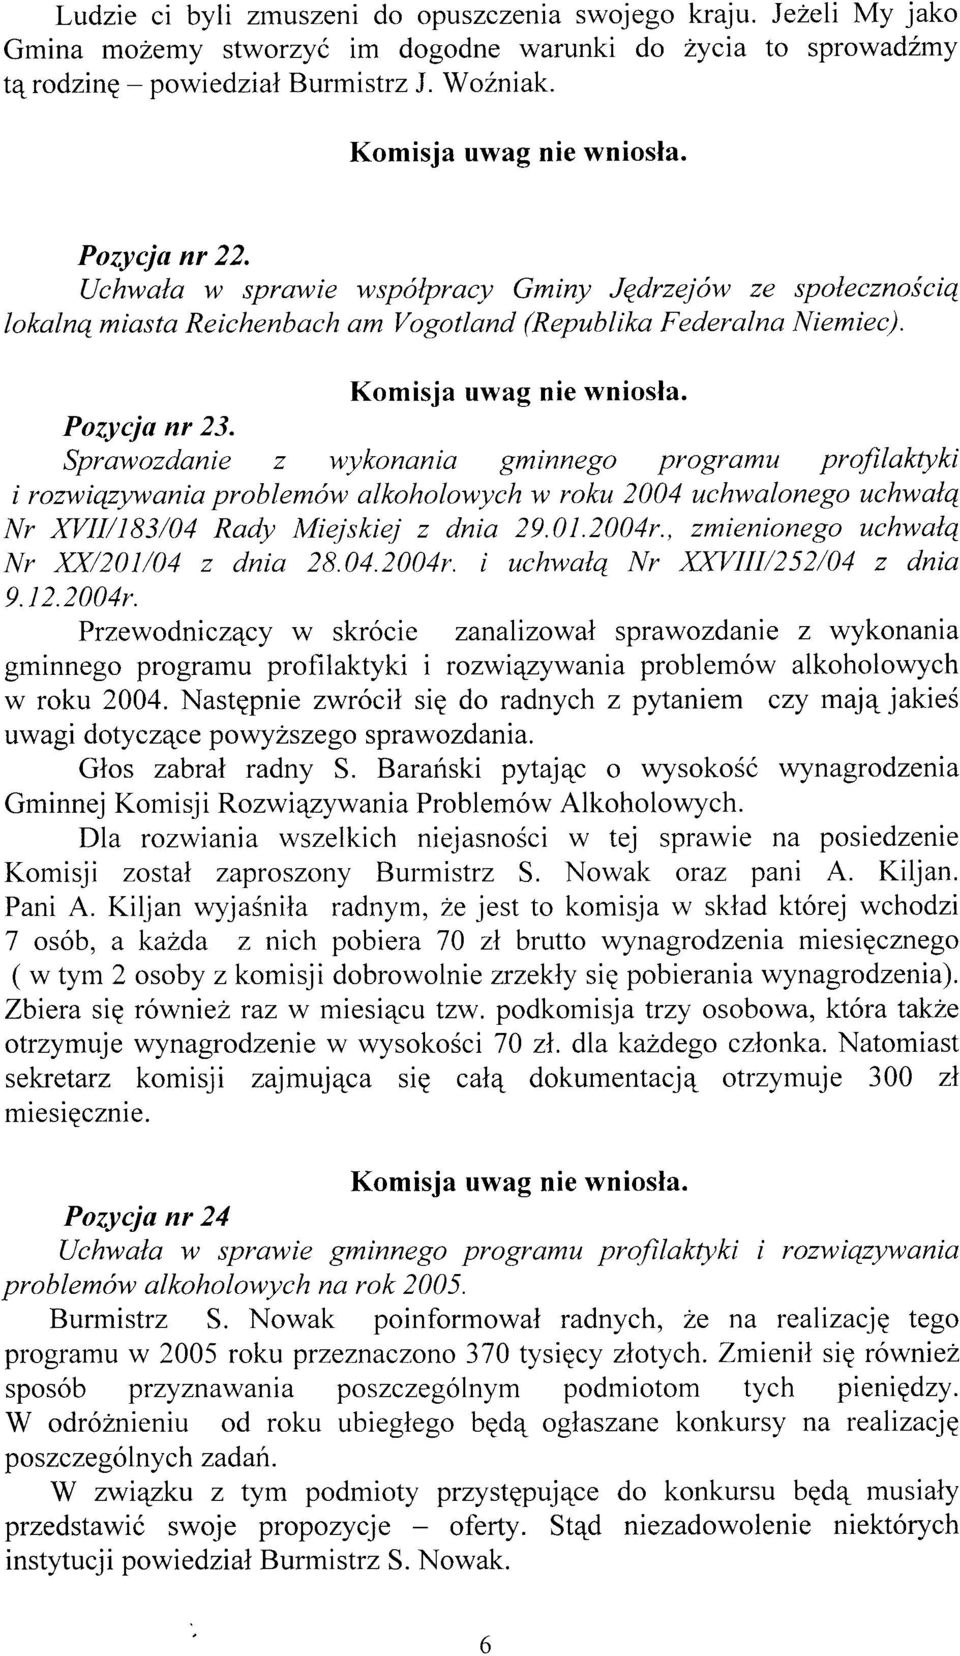 Sprawozdanie z wykonania gminnego programu profilaktyki i rozwiqztnvania problemów alkoholowych w roku 2004 uchwalonego uchwalq lttr XVIill83/04 Rady Miejskiej z dnia 29.01.2004r.